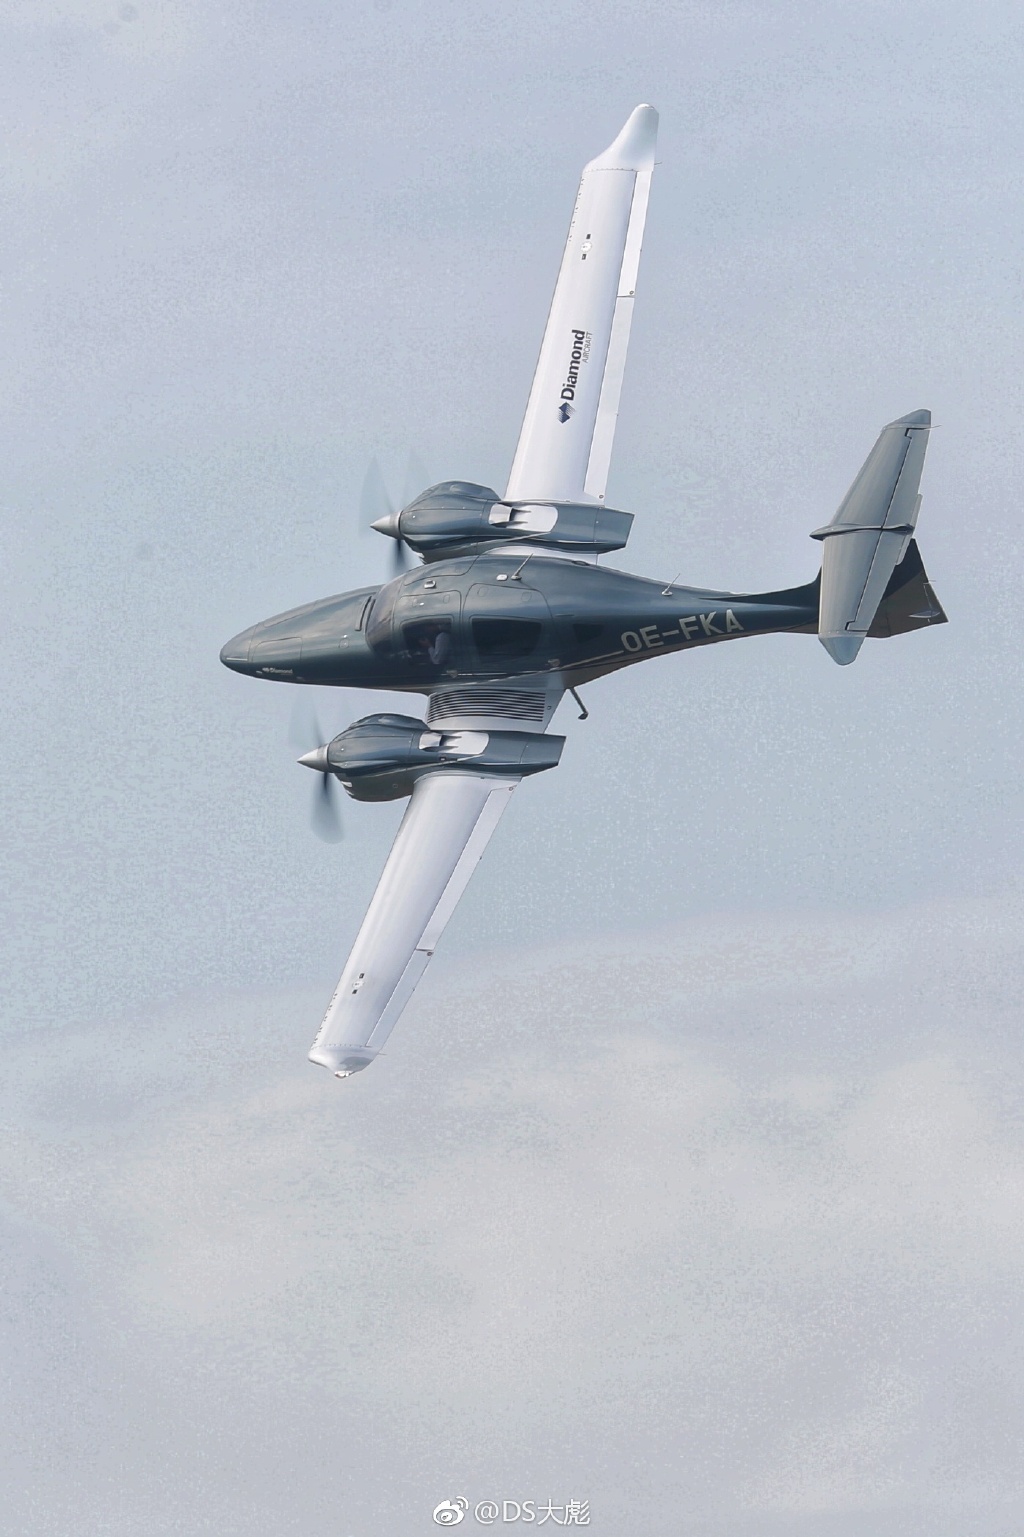 da62是钻石飞机高性能活塞机型家族里最大的一款机型